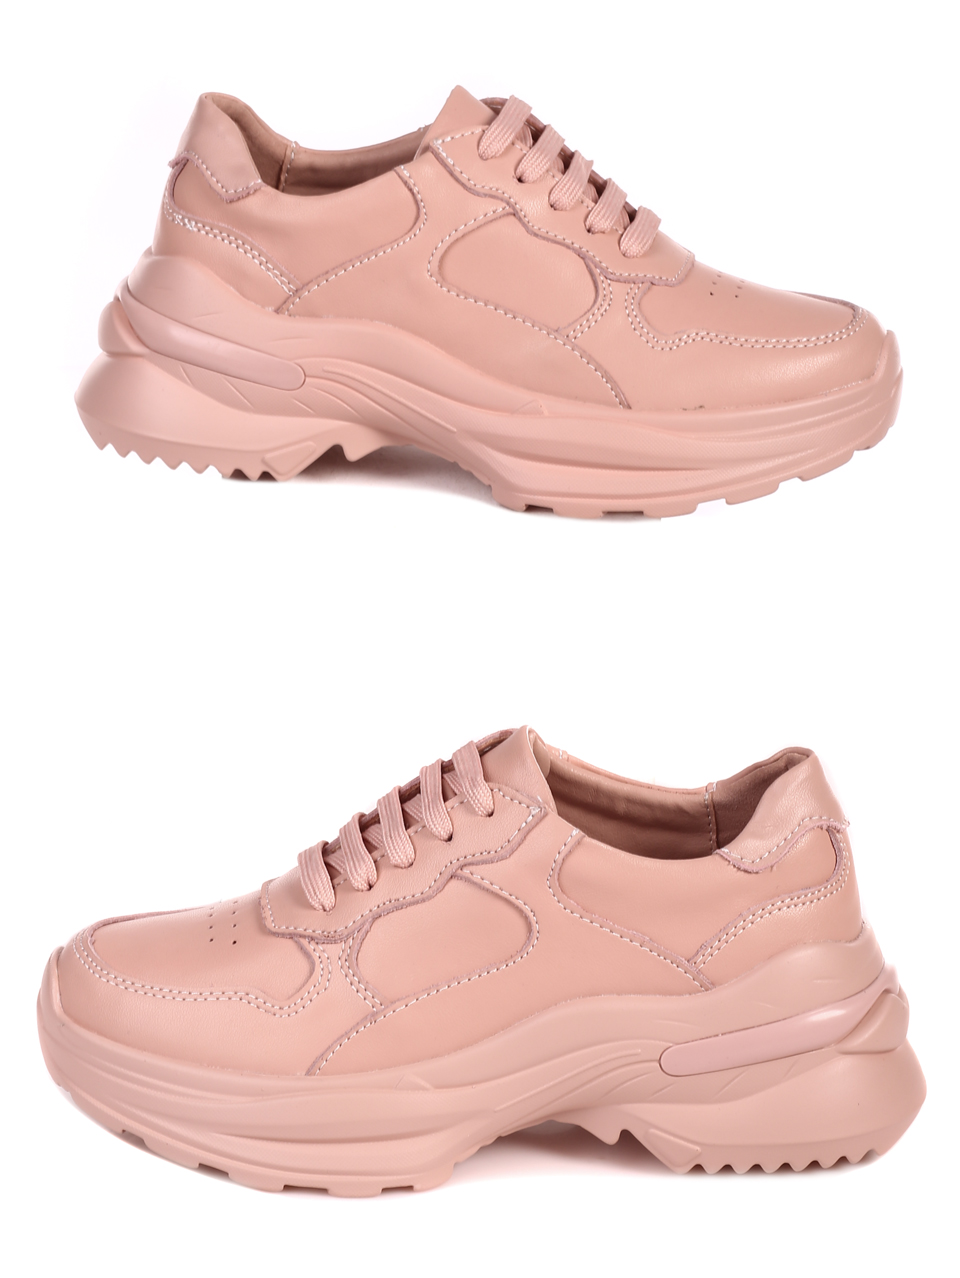 Ежедневни дамски обувки от естествена кожа в розово 3AF-22654 pink